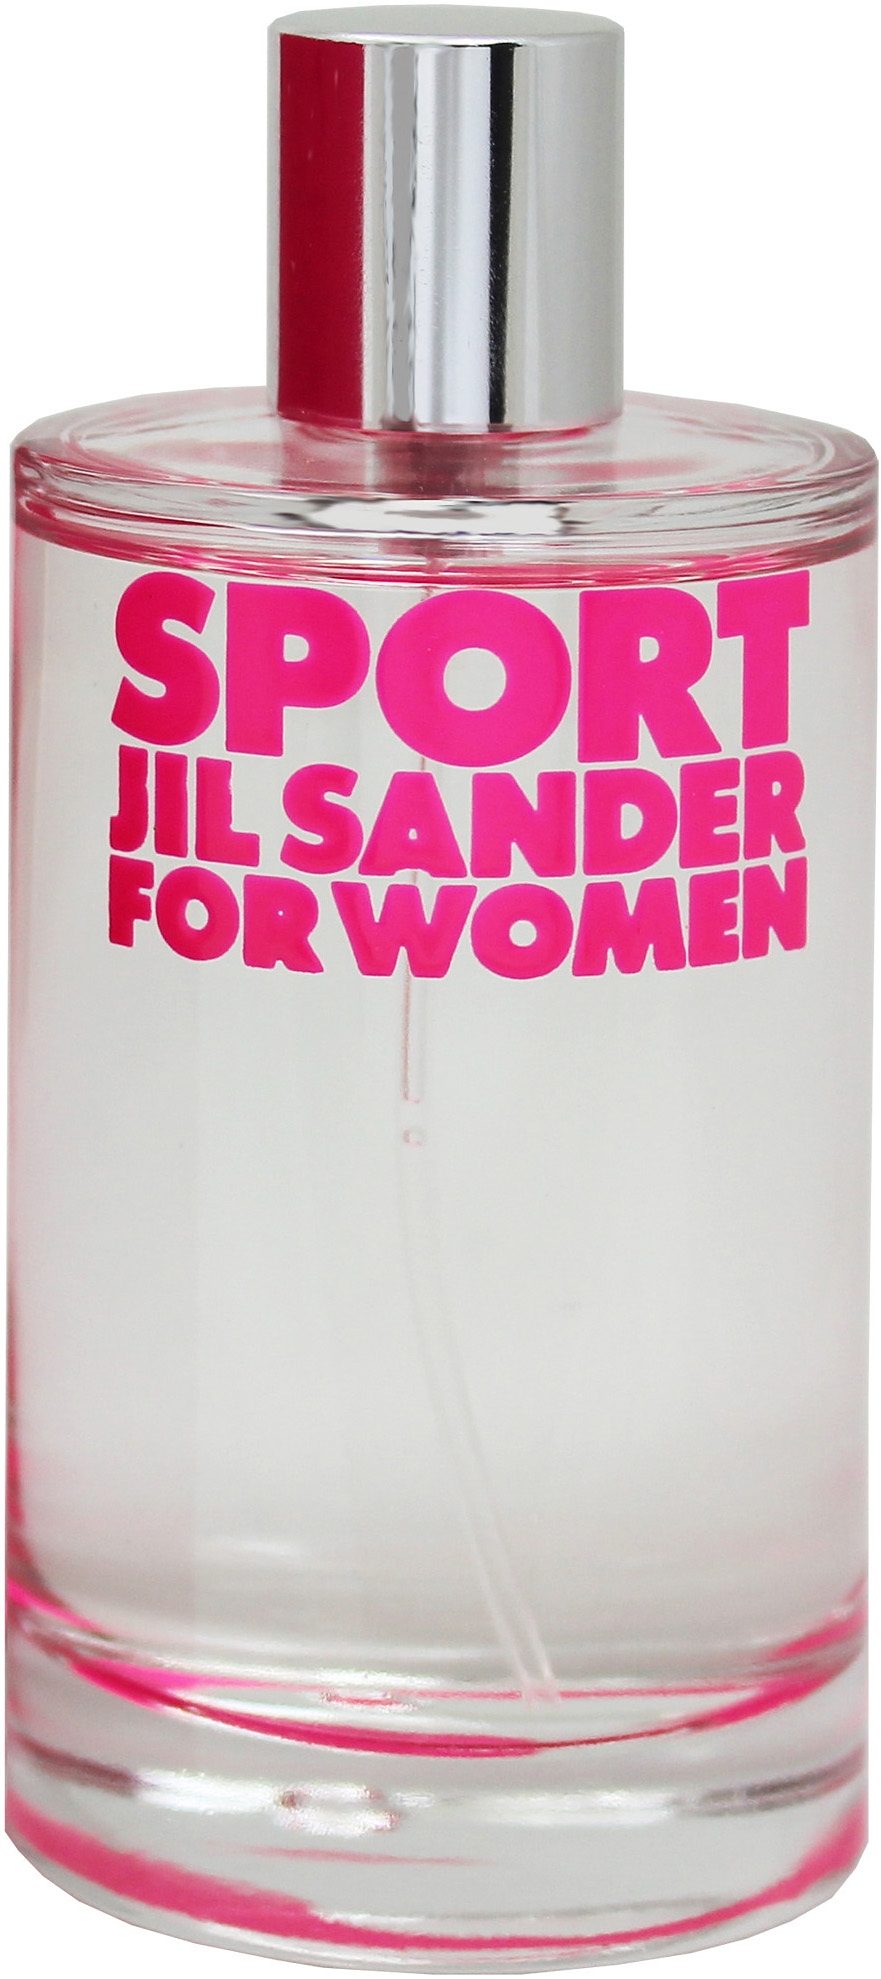 Jil Sander Sport For Women Eau De Toilette 100 ml